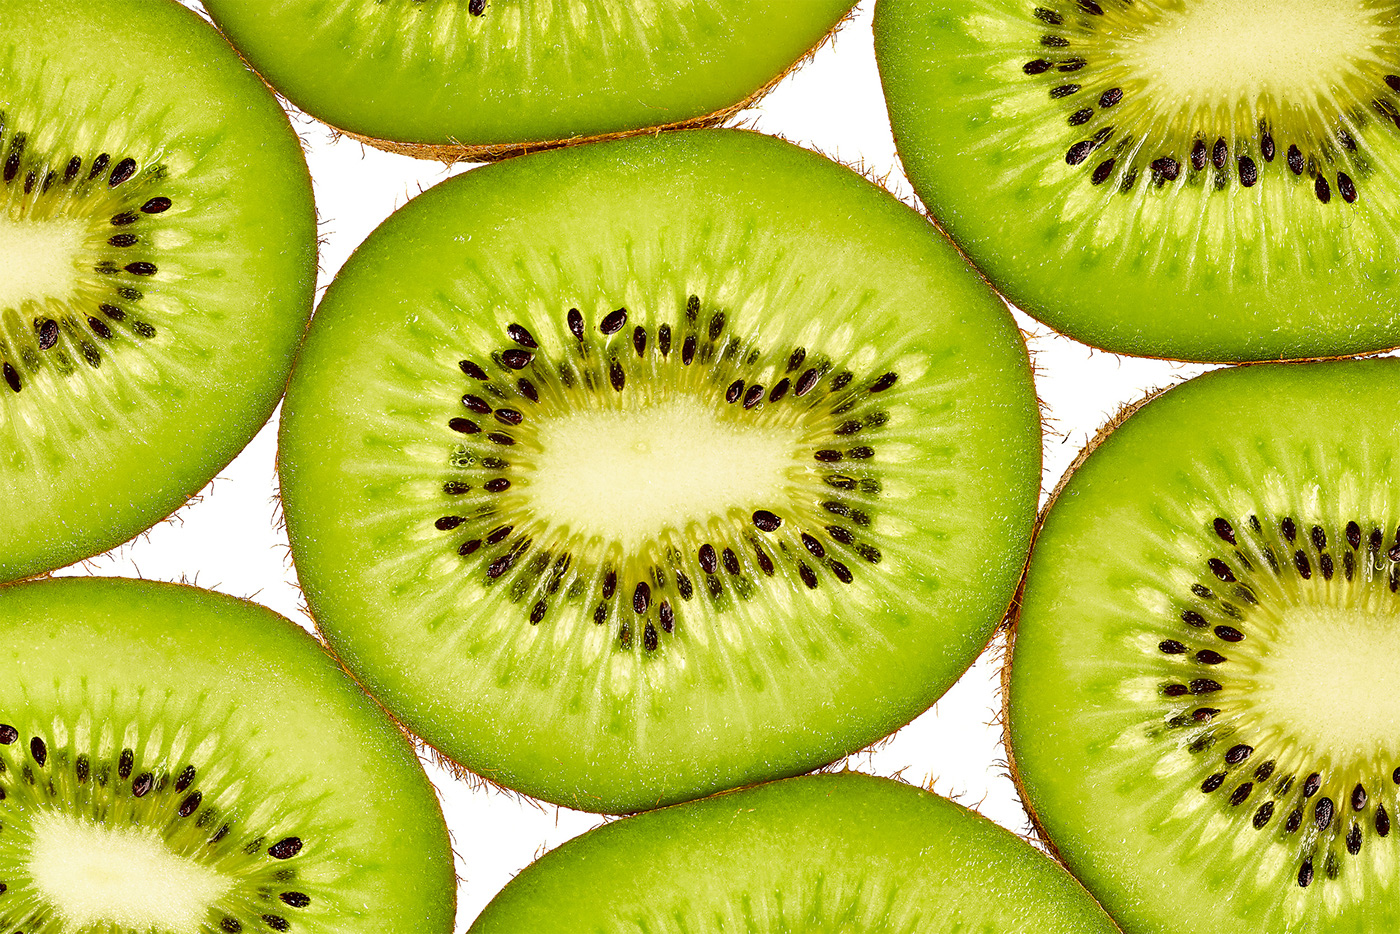 Sliced Kiwi Fruit Photography on Behance